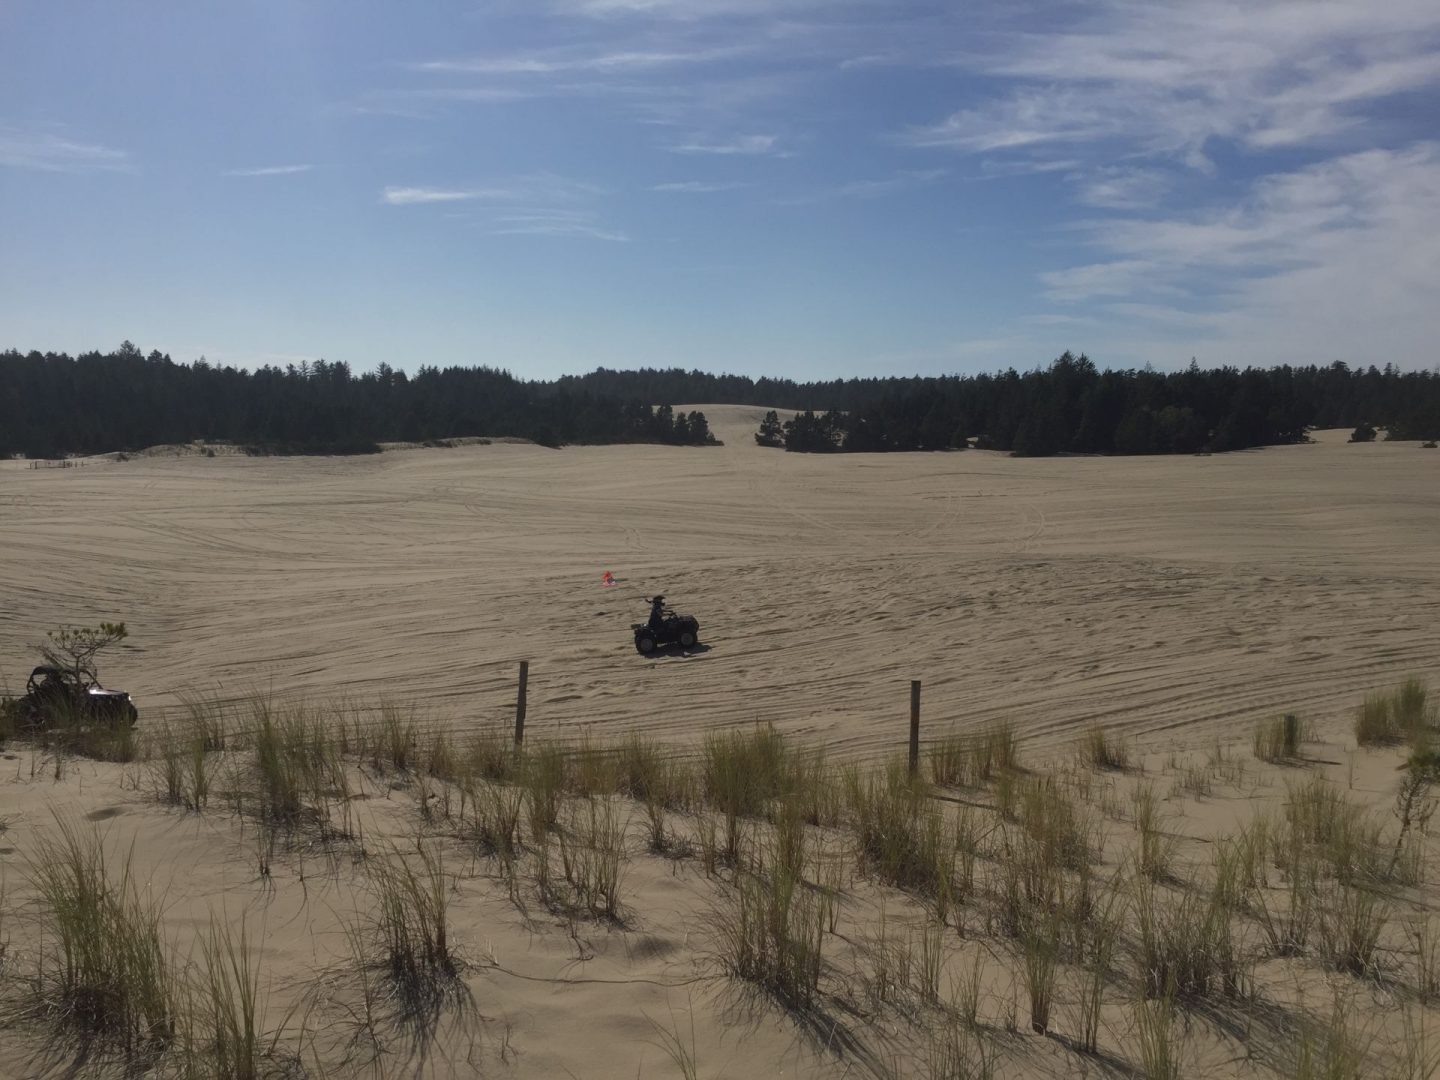 Sand dunes on the Oregon Coast